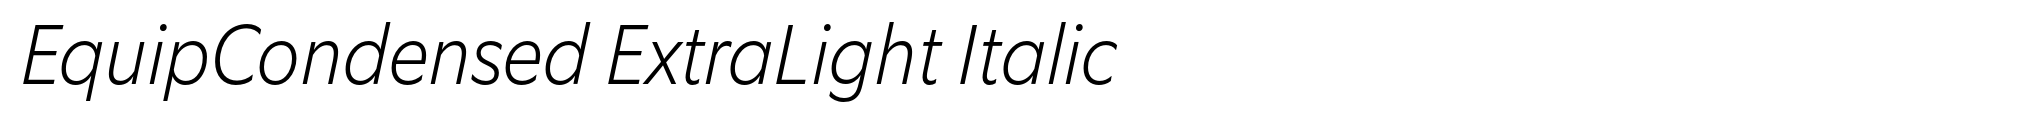 EquipCondensed ExtraLight Italic image